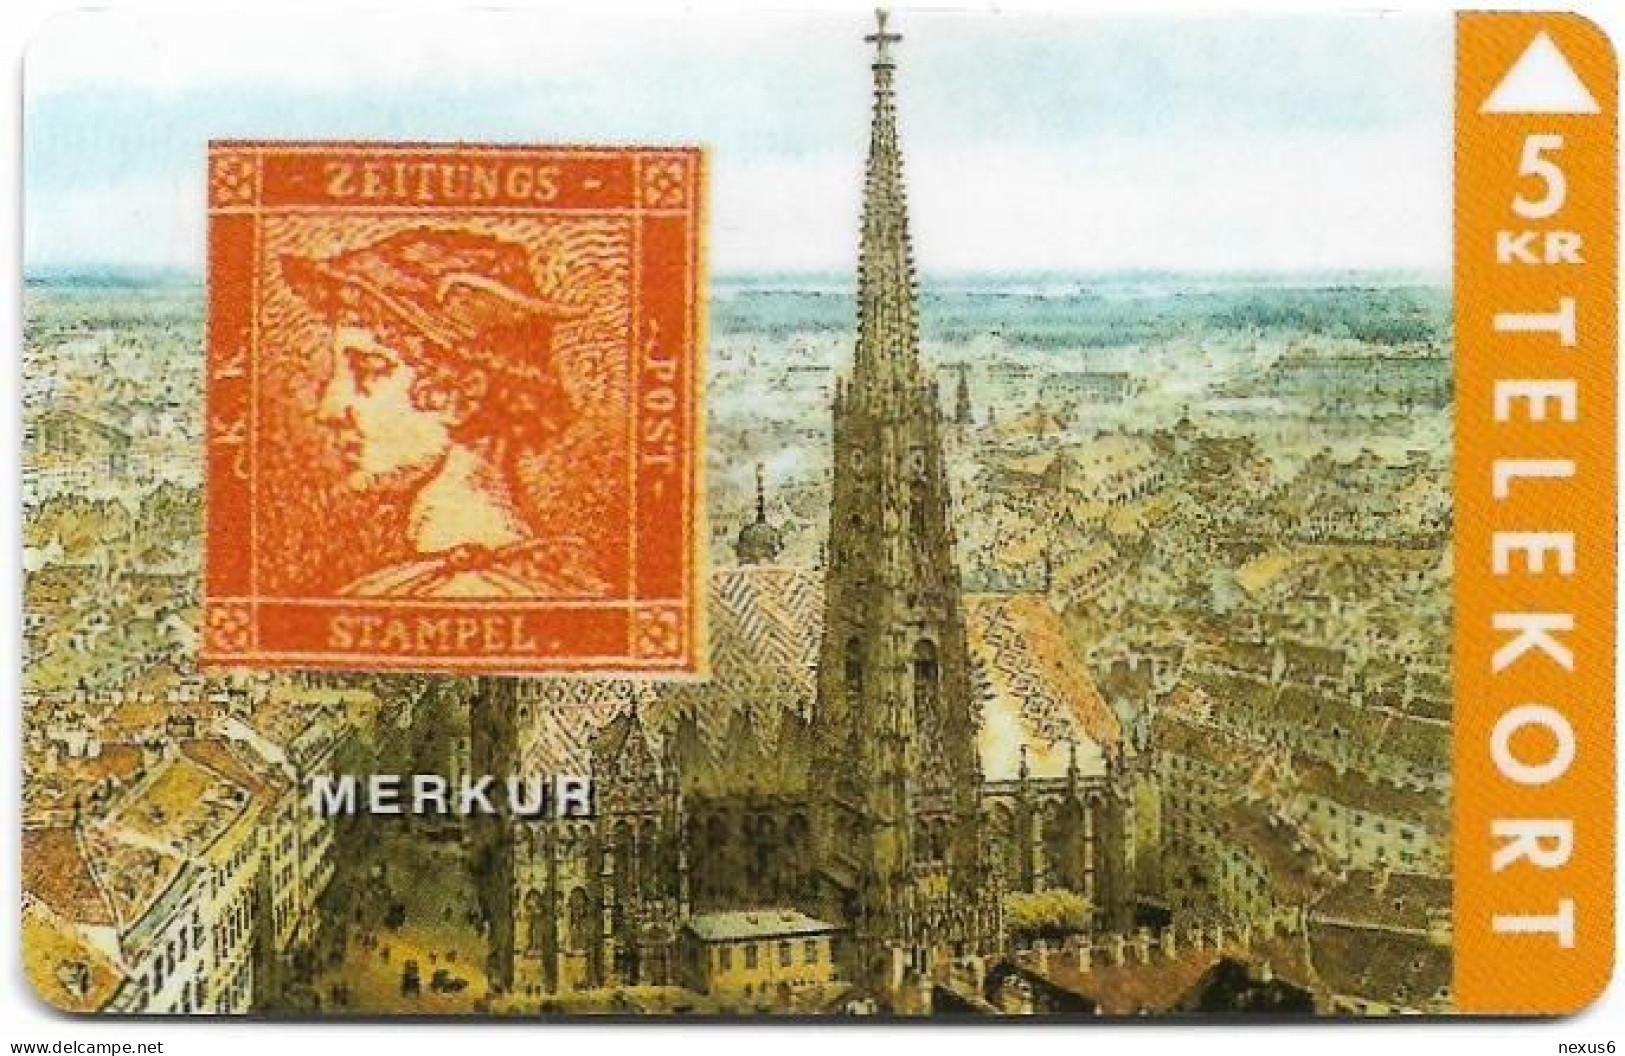 Denmark - TS - Rare Stamps - Merkur - TDTP044 - 04.1994, 5Kr, 2.000ex, Used - Denemarken